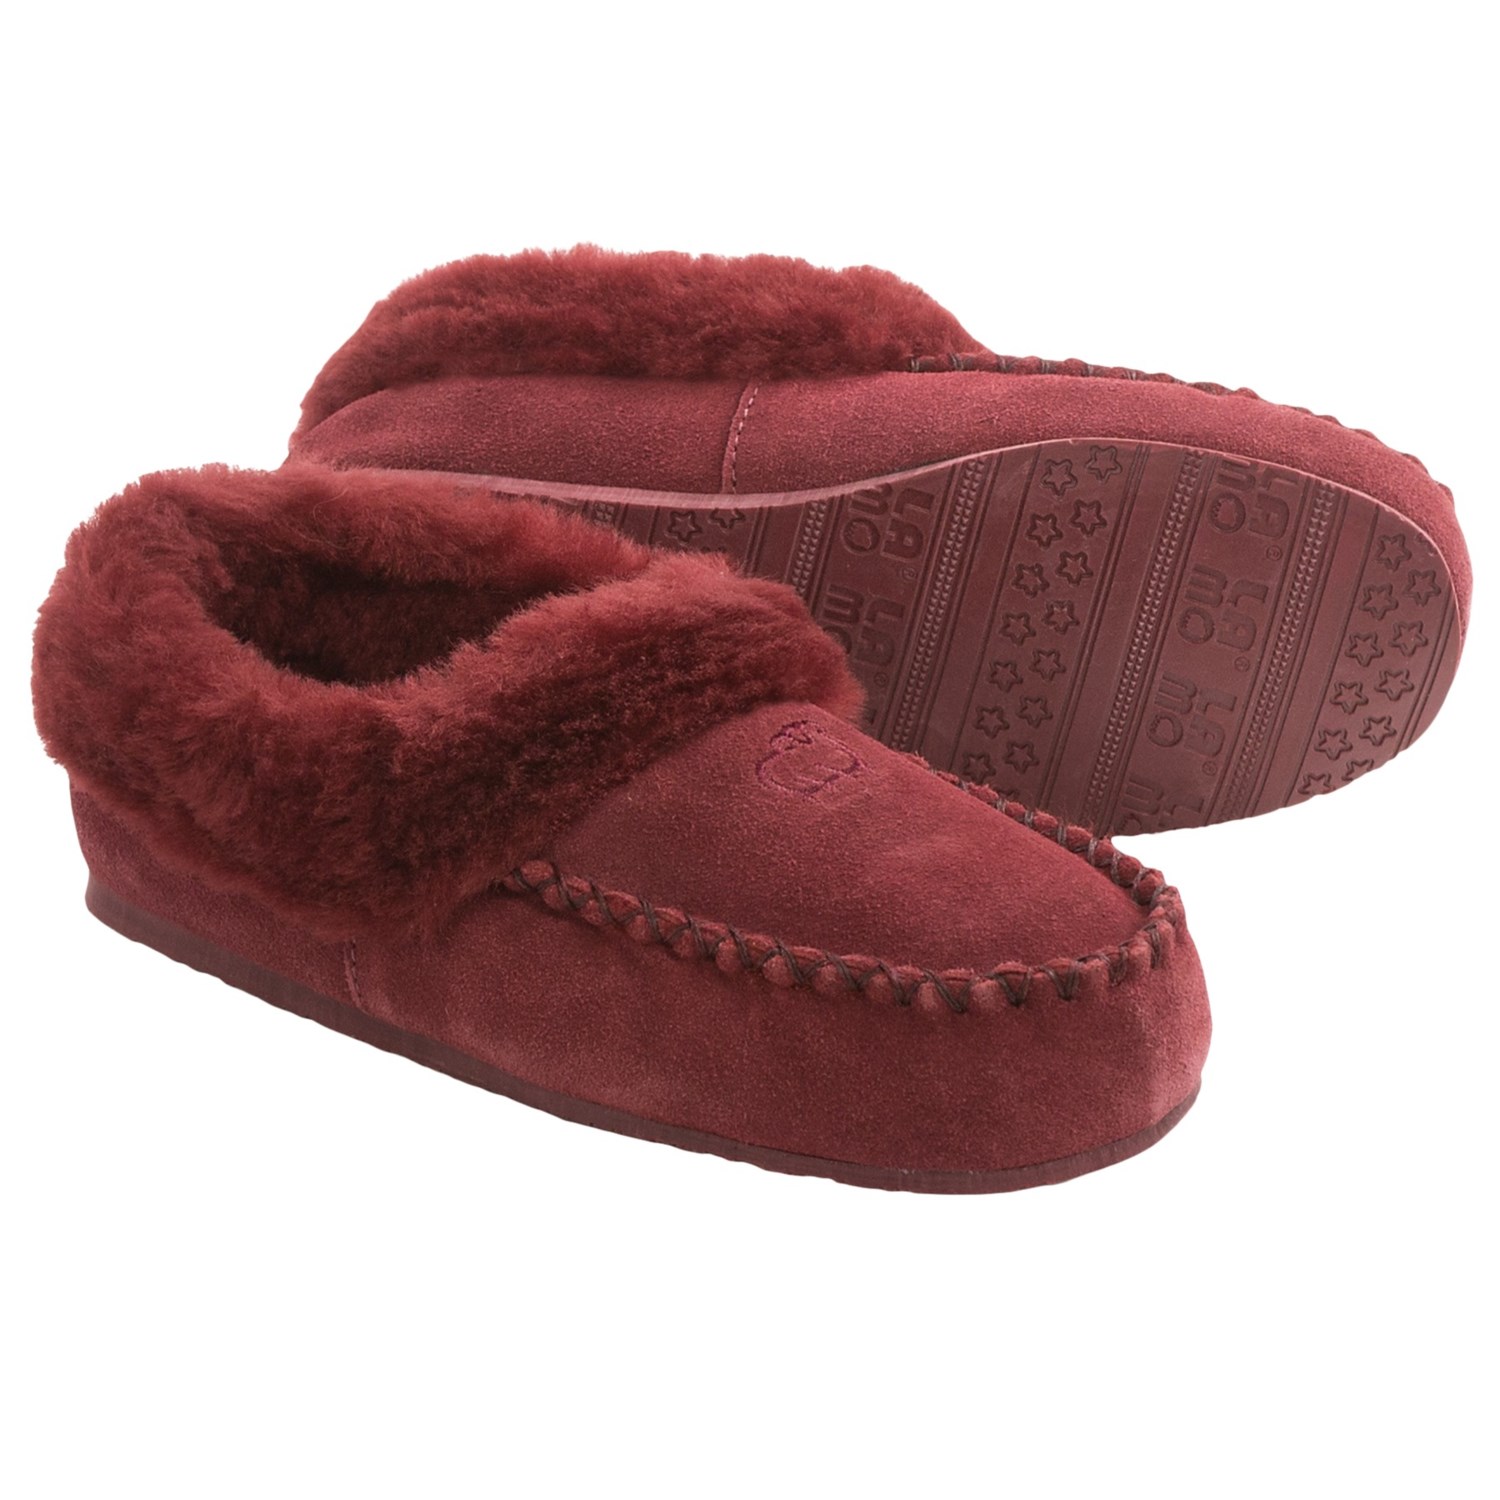 LAMO Footwear Australian Bootie Slippers - Suede, Sheepskin Fleece ...